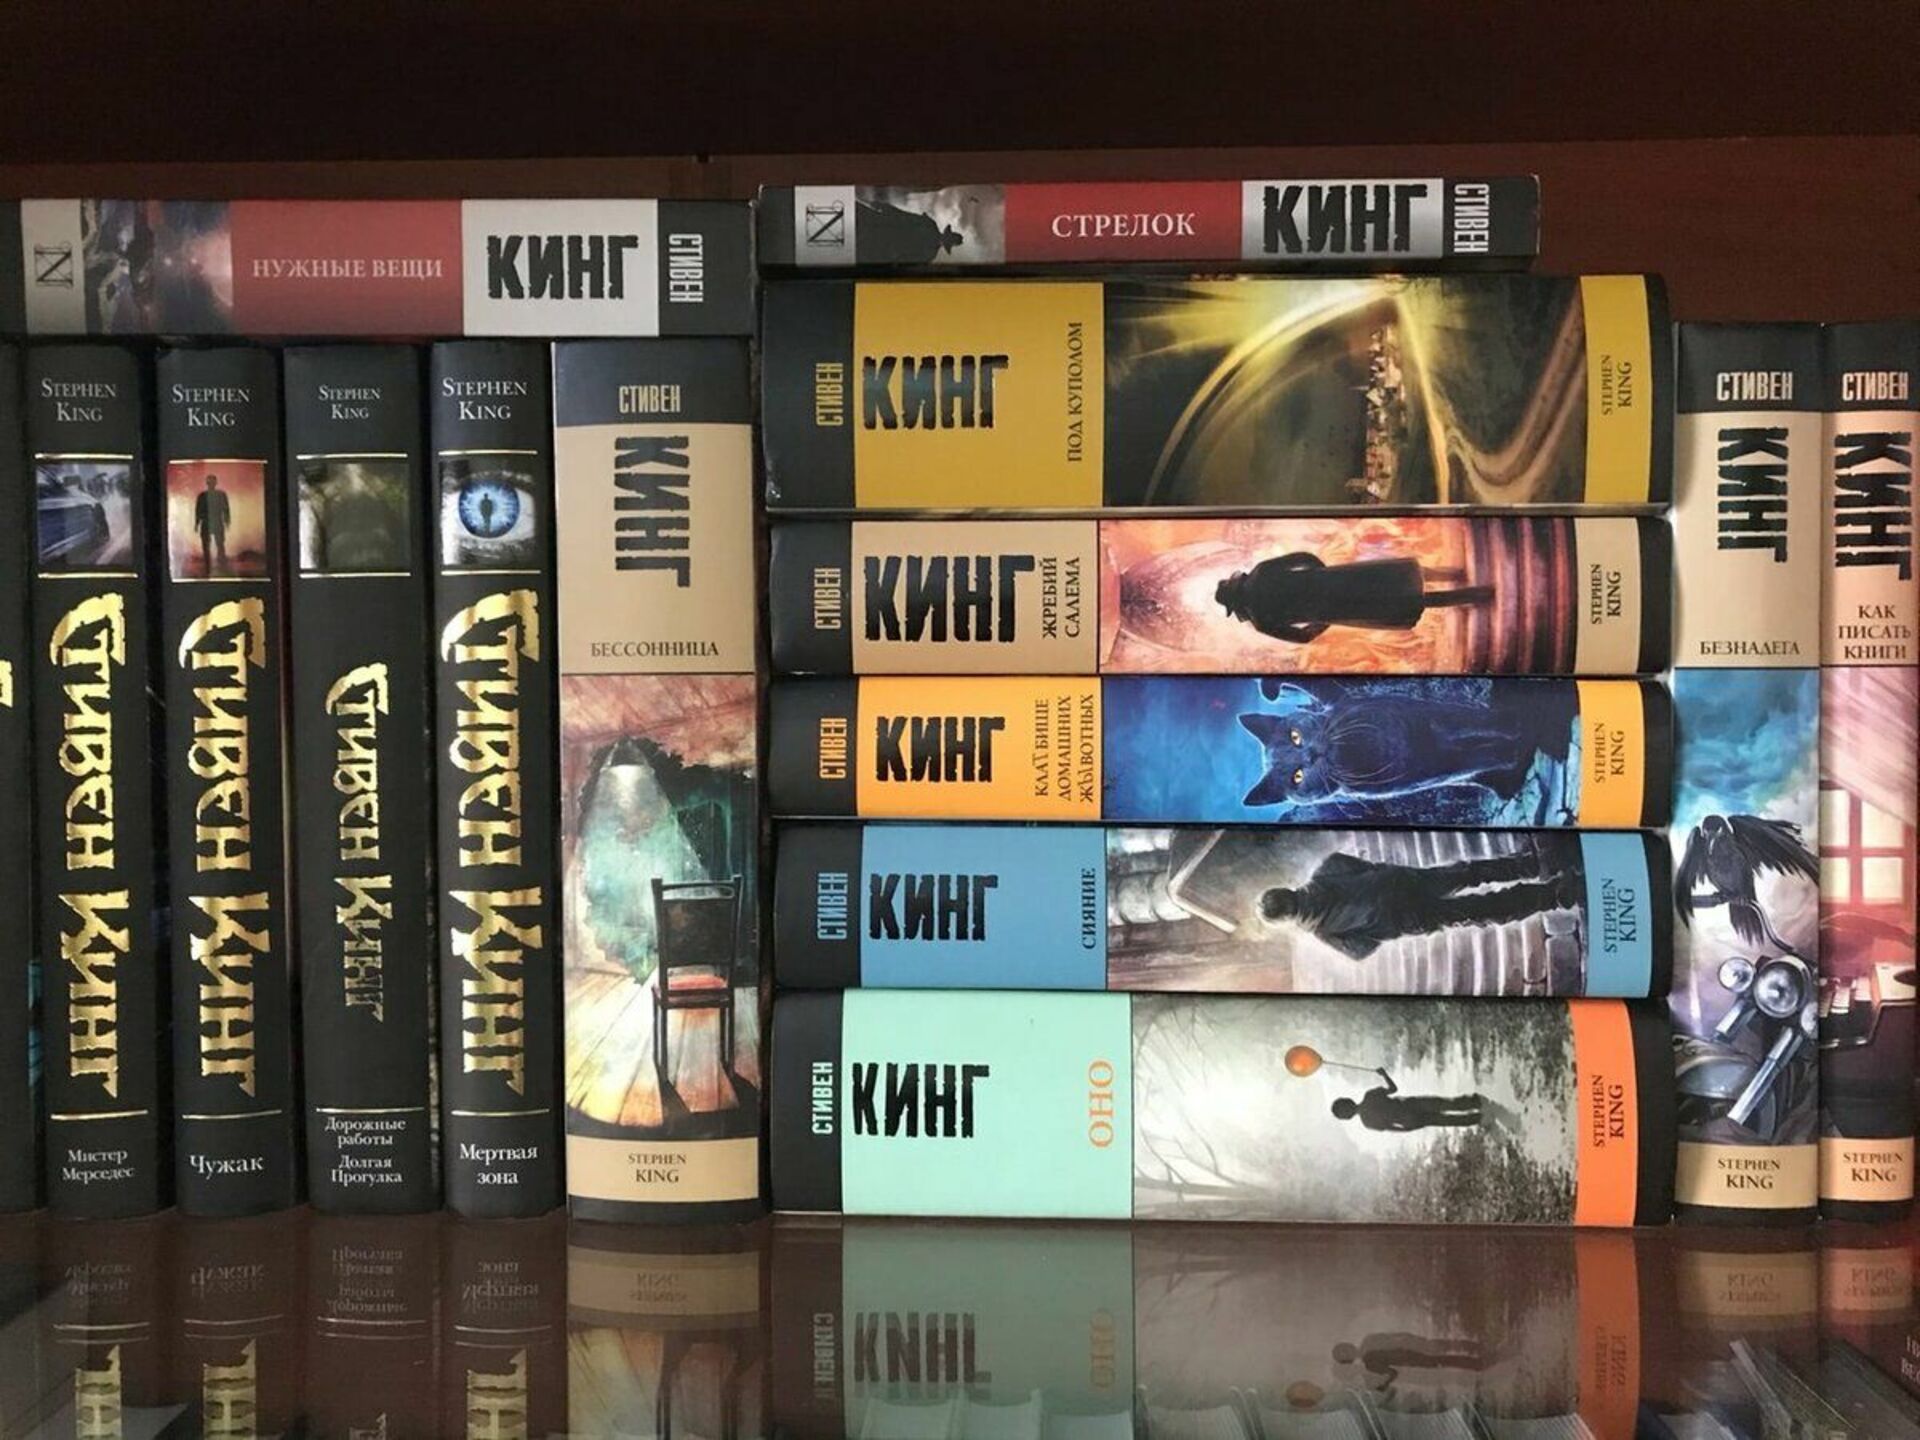 Лучшие произведения стивена кинга. Полка с книгами Стивена Кинга. Коллекция книг Стивена Кинга.